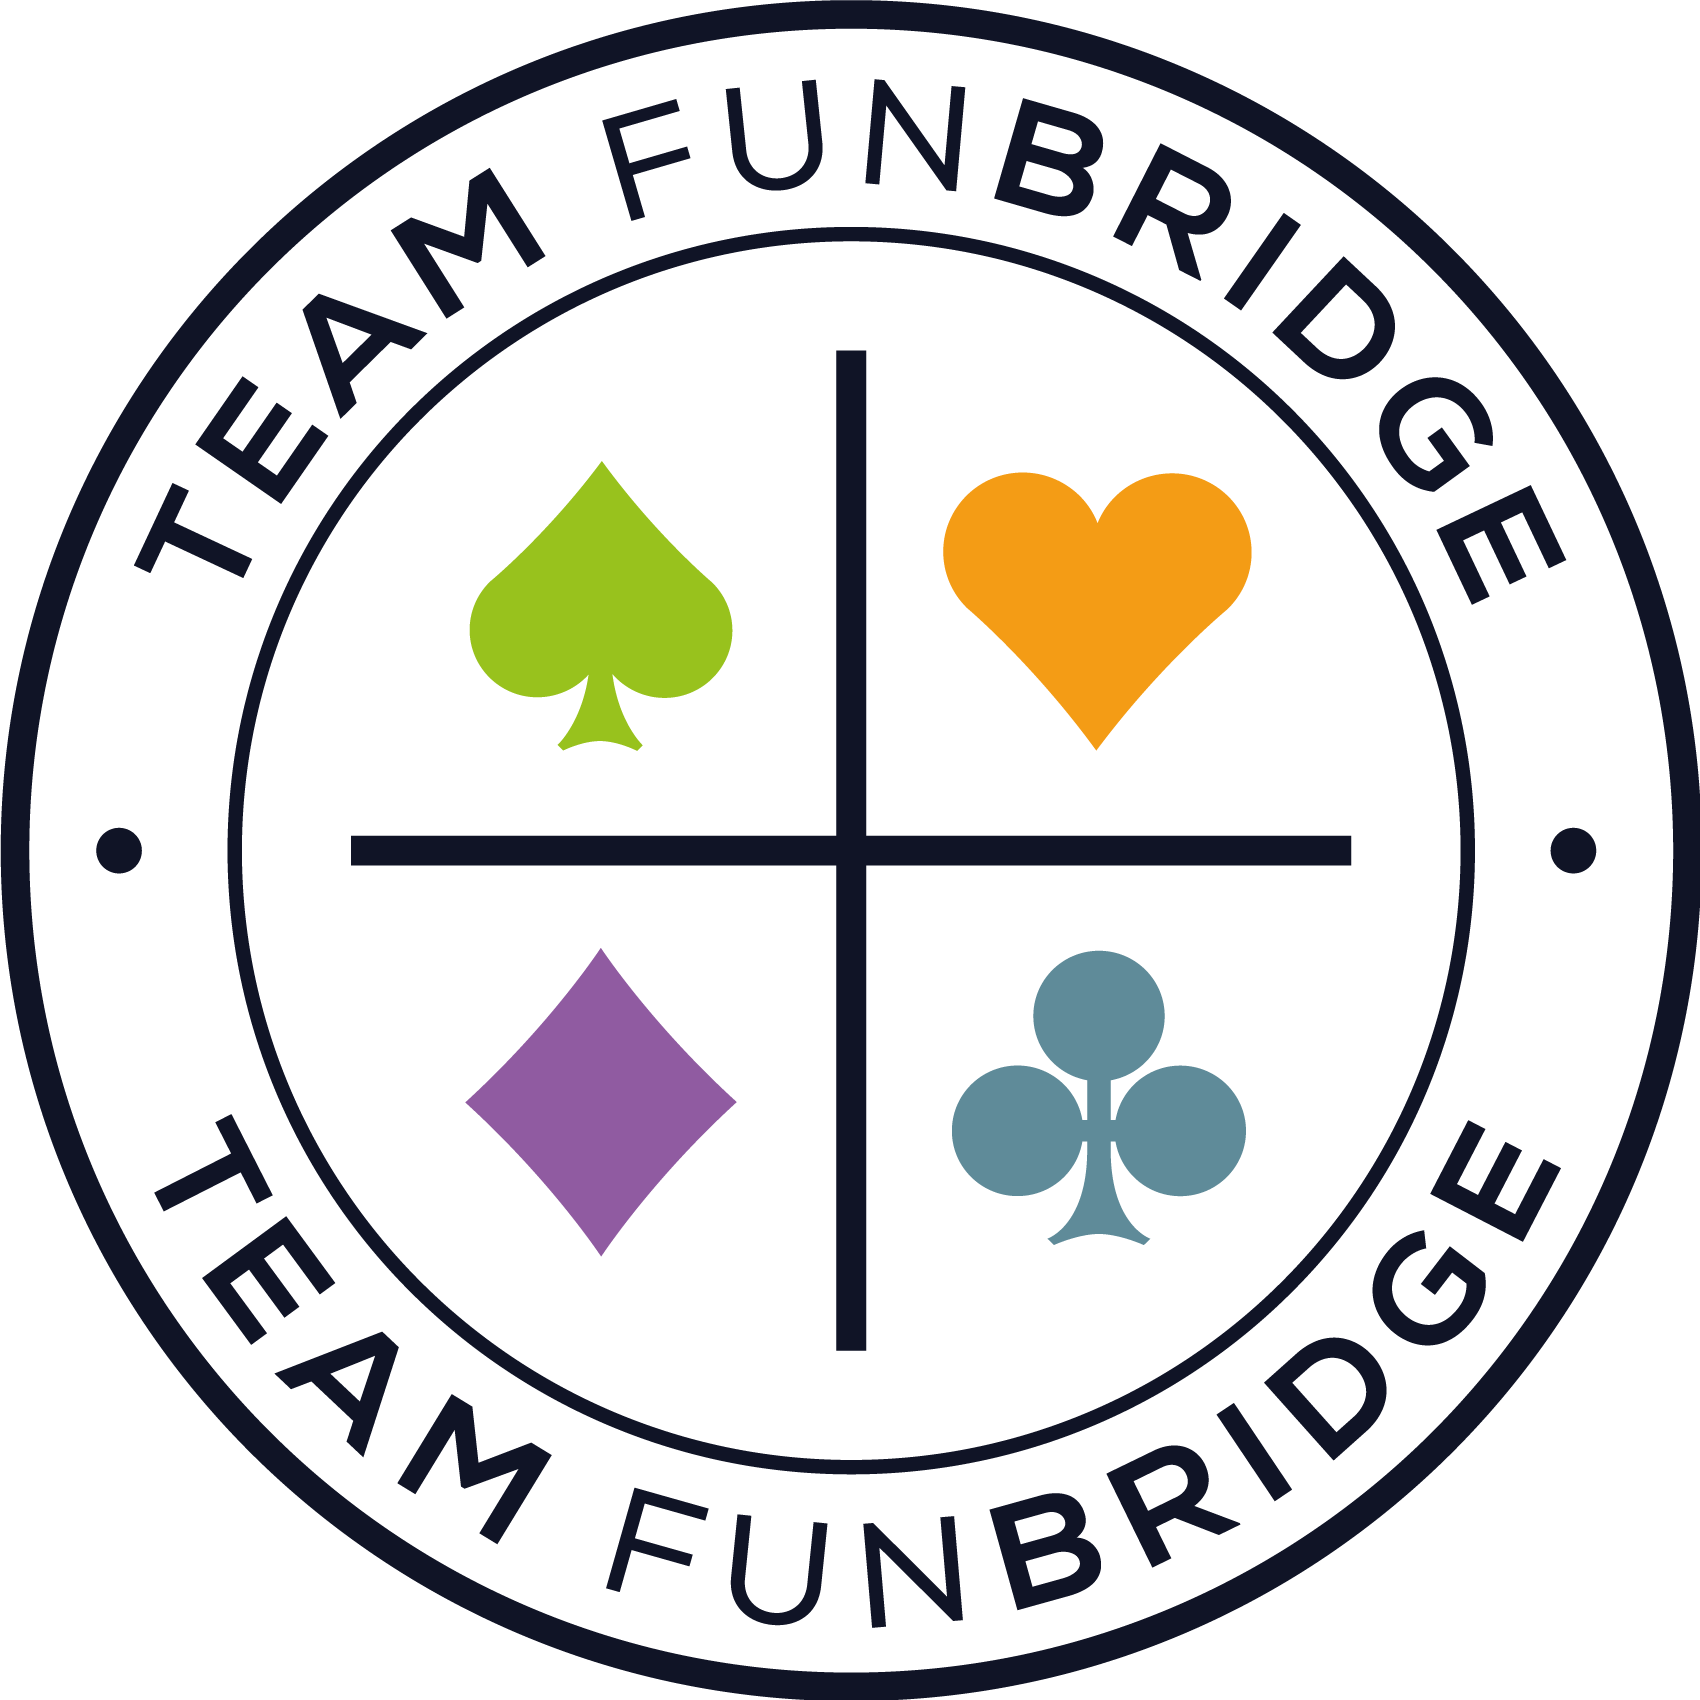 Team Funbridge